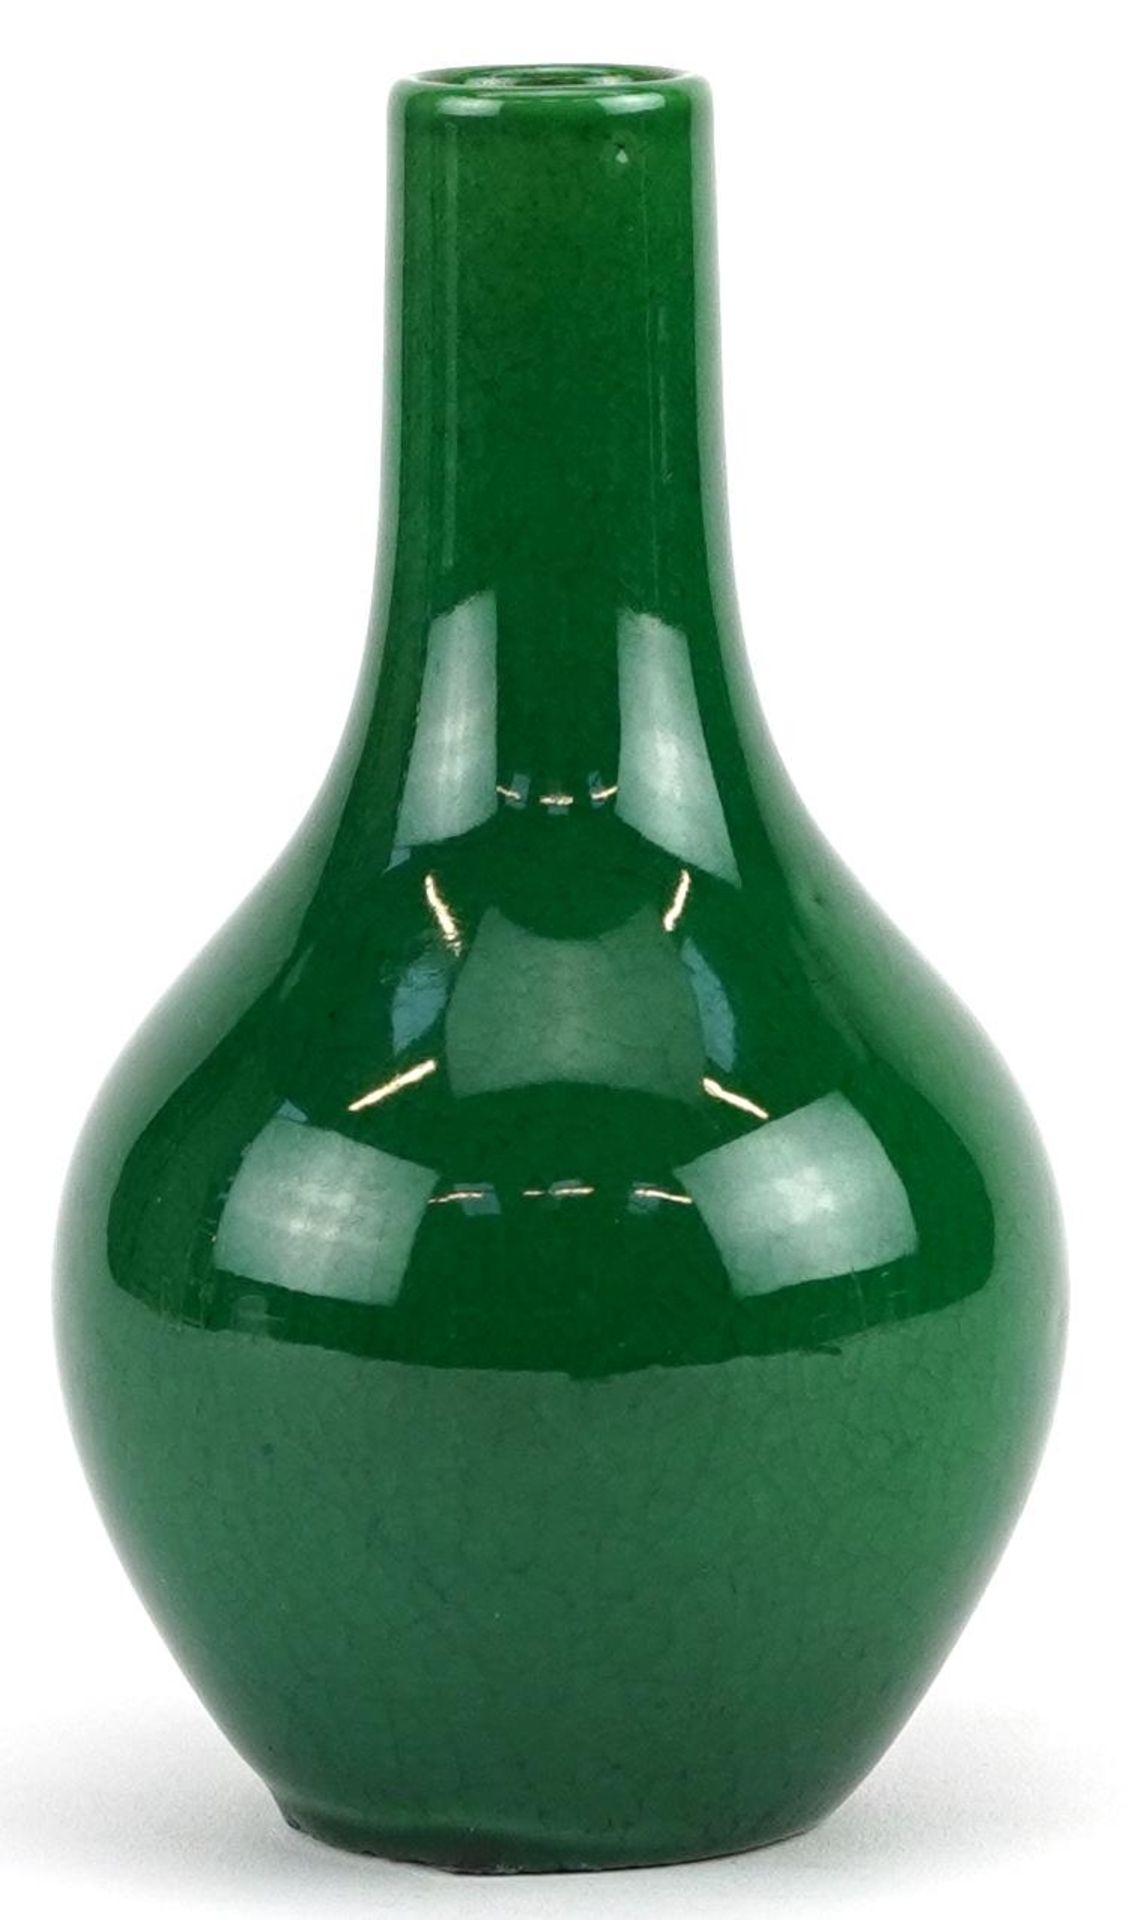 Chinese porcelain vase having a green crackle glaze, 12cm high - Image 3 of 6